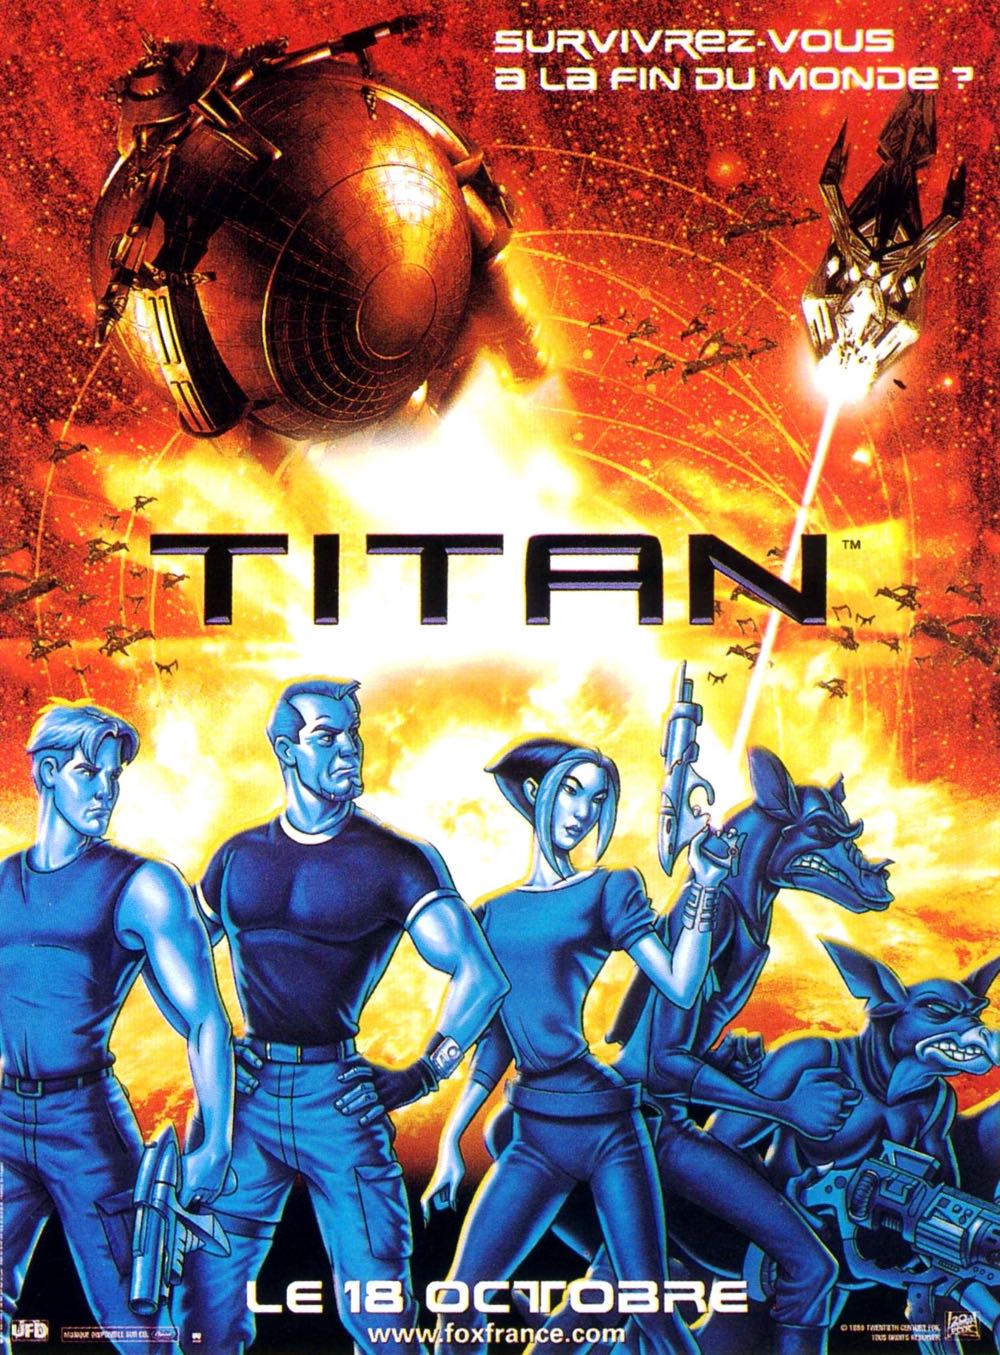 Titan A.E. DVD movie collectible [Barcode 8010312023903] - Main Image 2